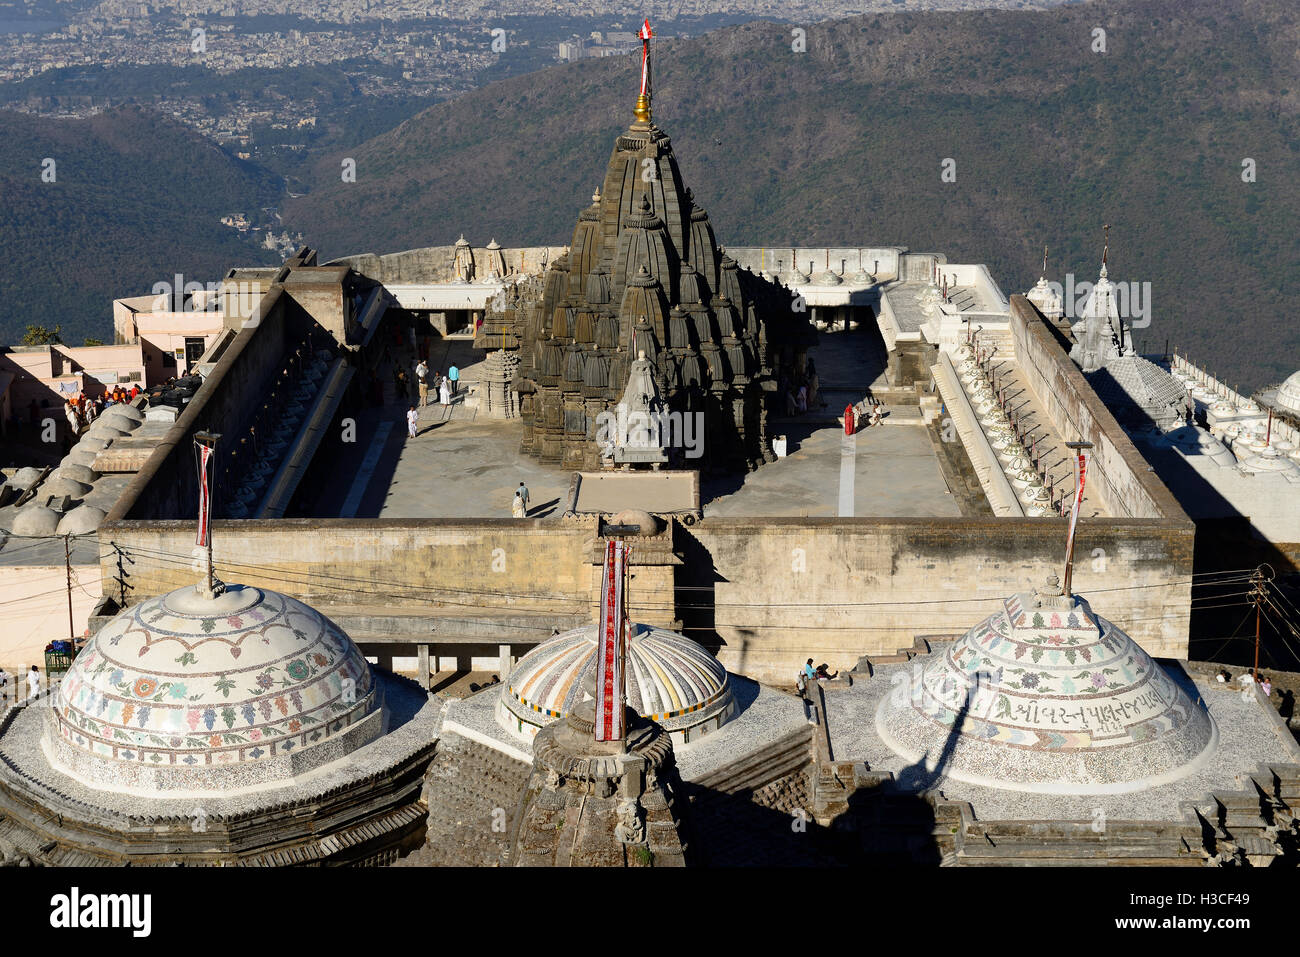 Jain temple complexe sur la sainte colline près du girnar junagadh city dans l'état du Gujarat en Inde. Banque D'Images